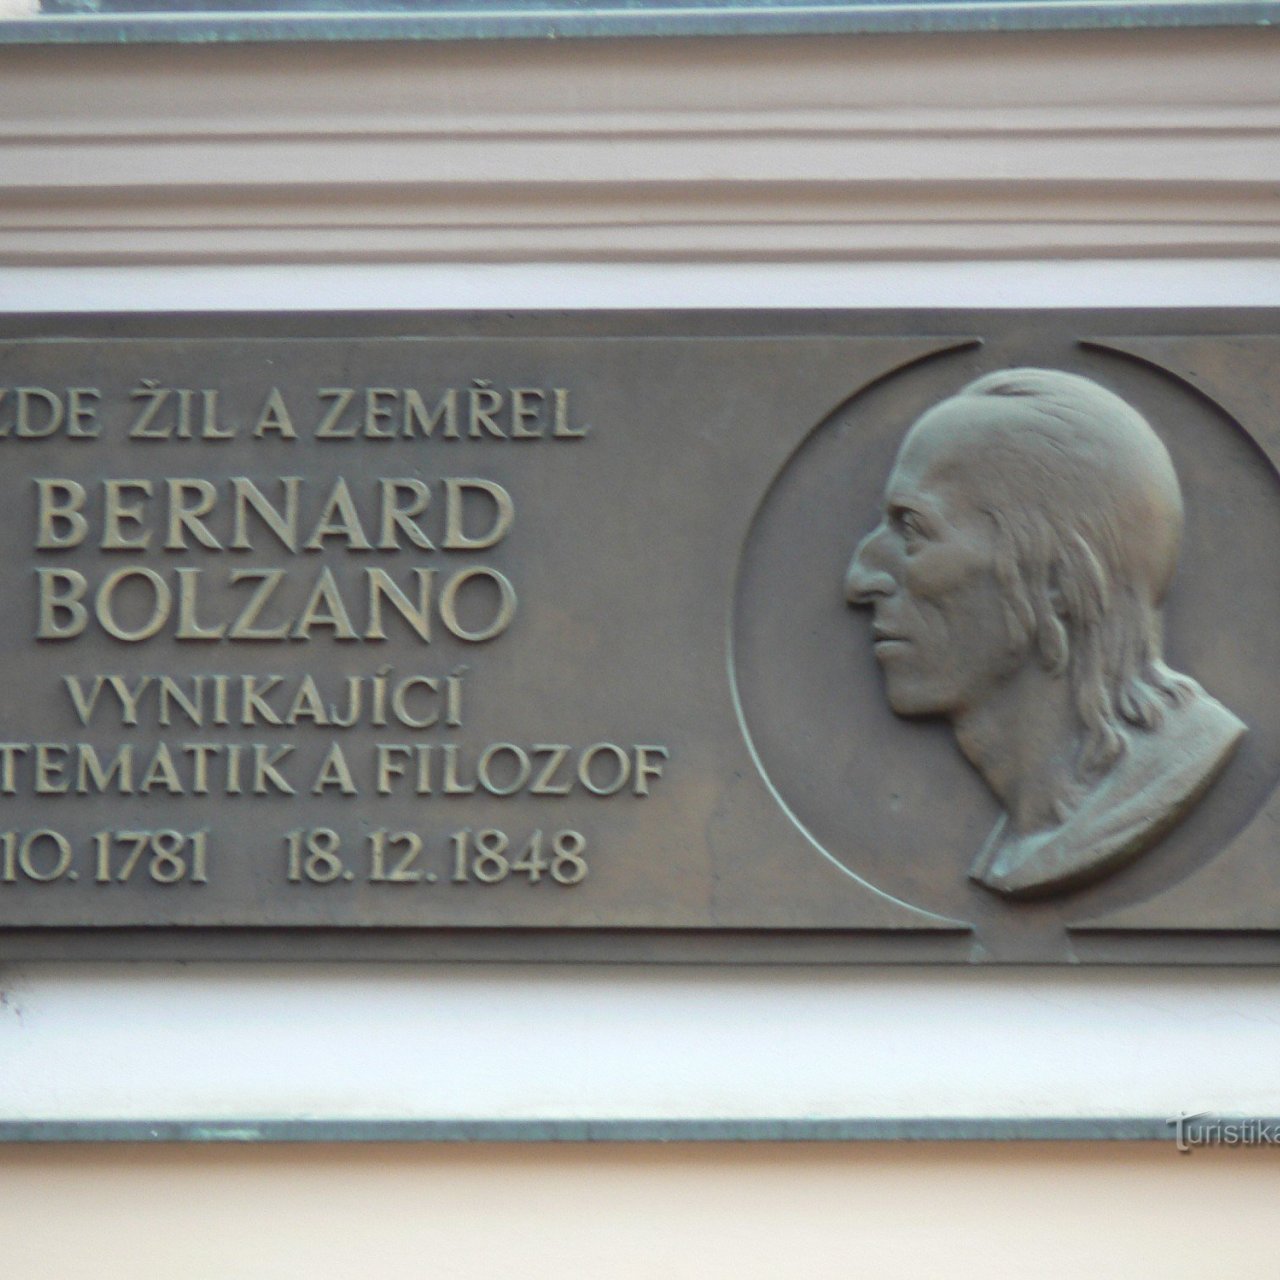 Praha 1 - Celetná - pamětní deska Bernard Bolzano